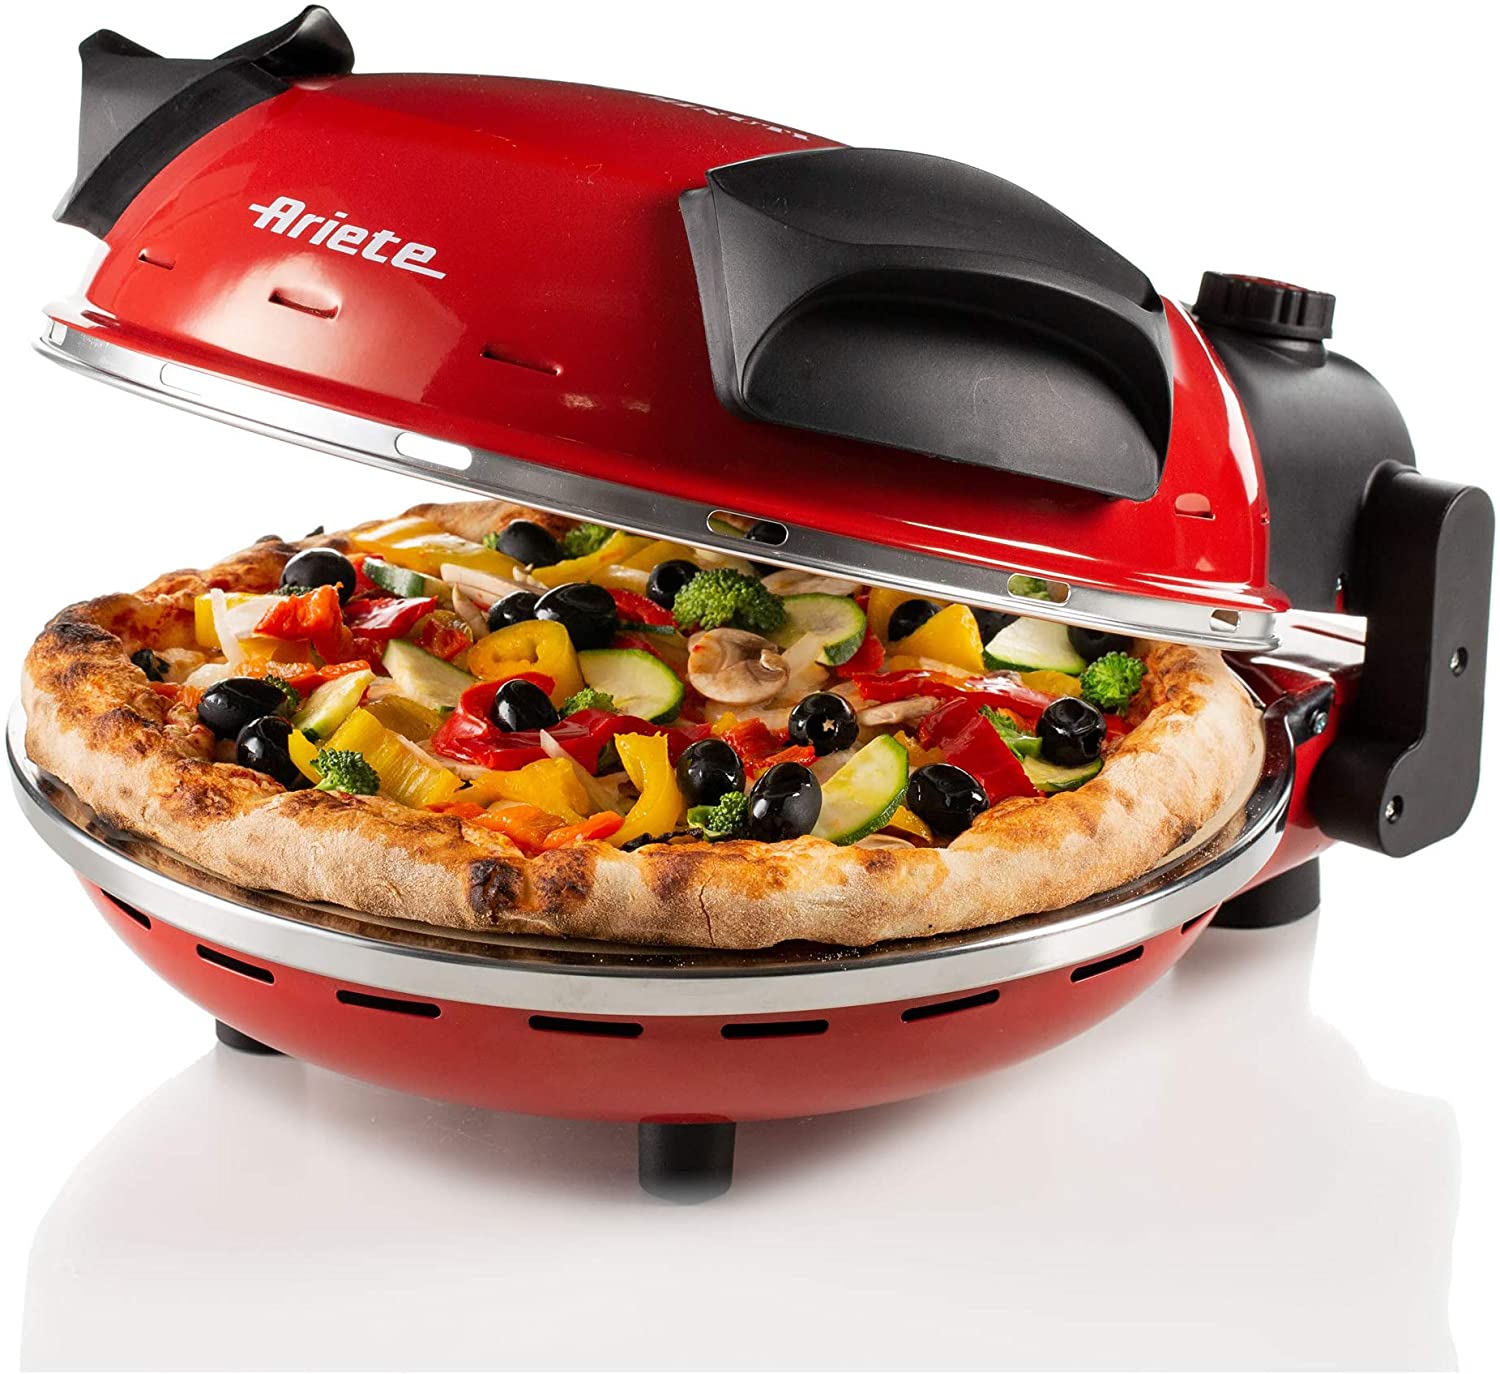 Ariete 909 Pizza 4' Minuti, Forno per pizza, 1200 W, 5 livelli di cottura, Temperatura Max 400°C, Rosso